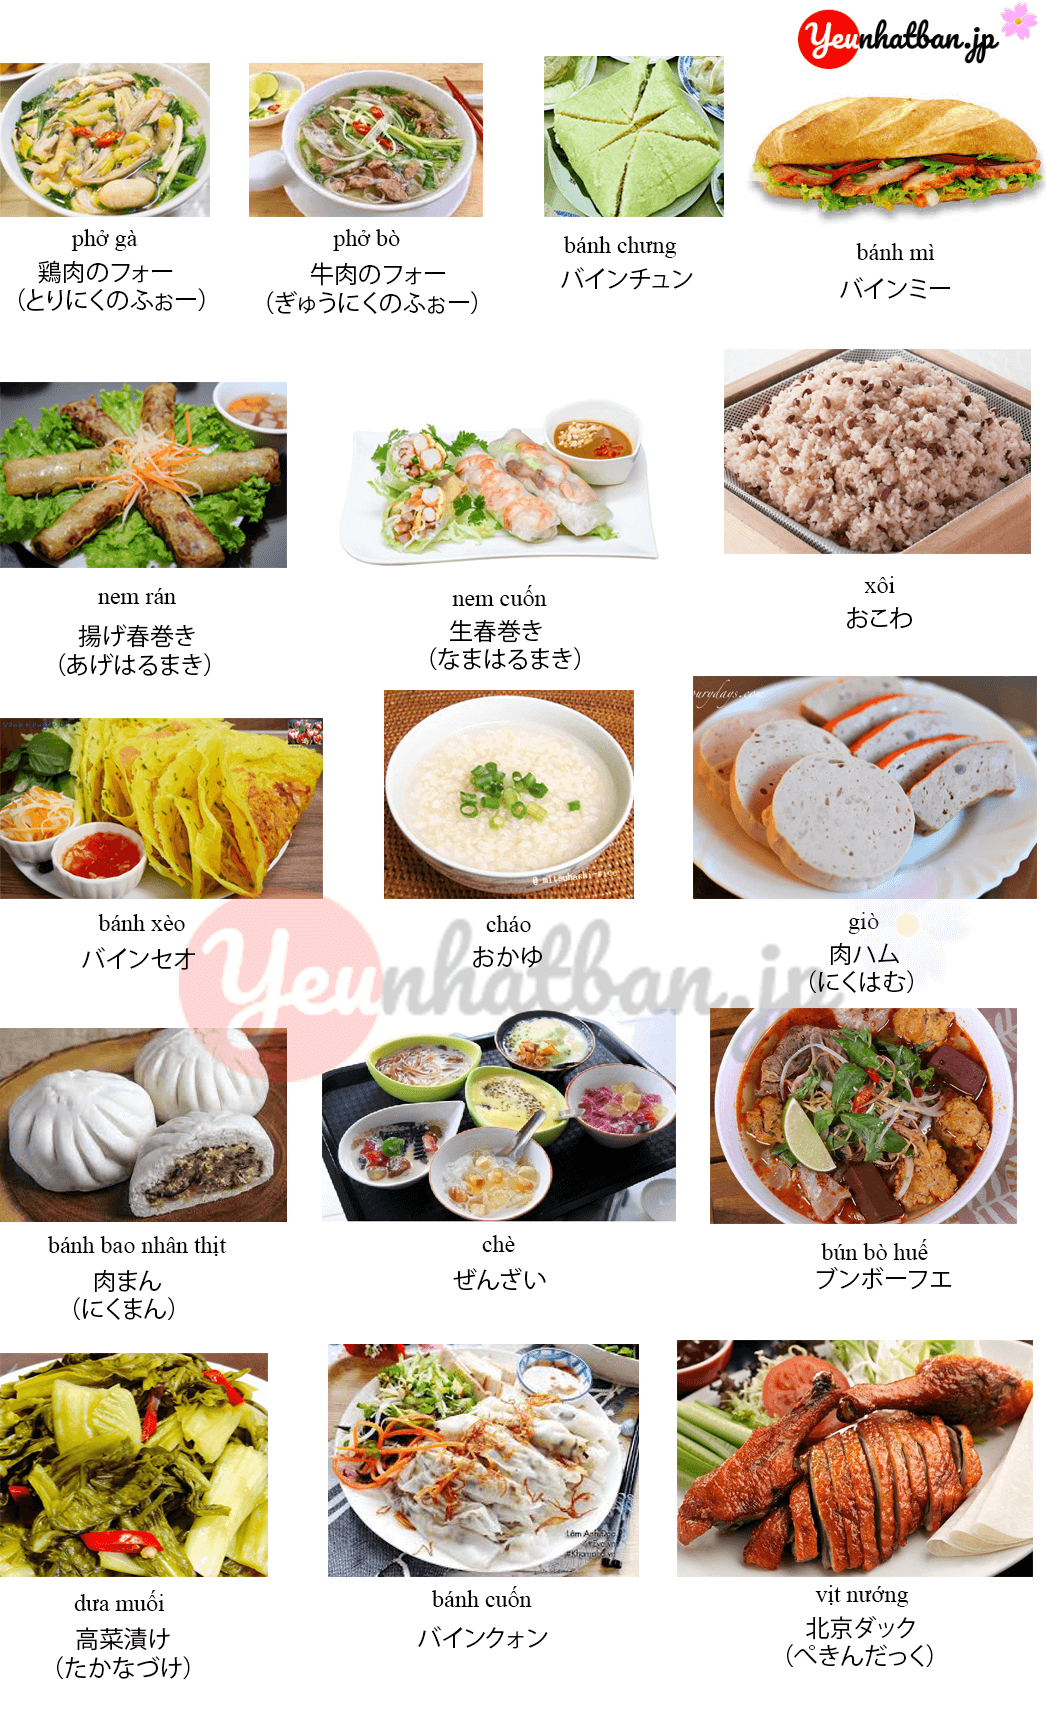 Từ vựng tiếng nhật chủ đề món ăn bằng hình ảnh - Yêu Nhật Bản